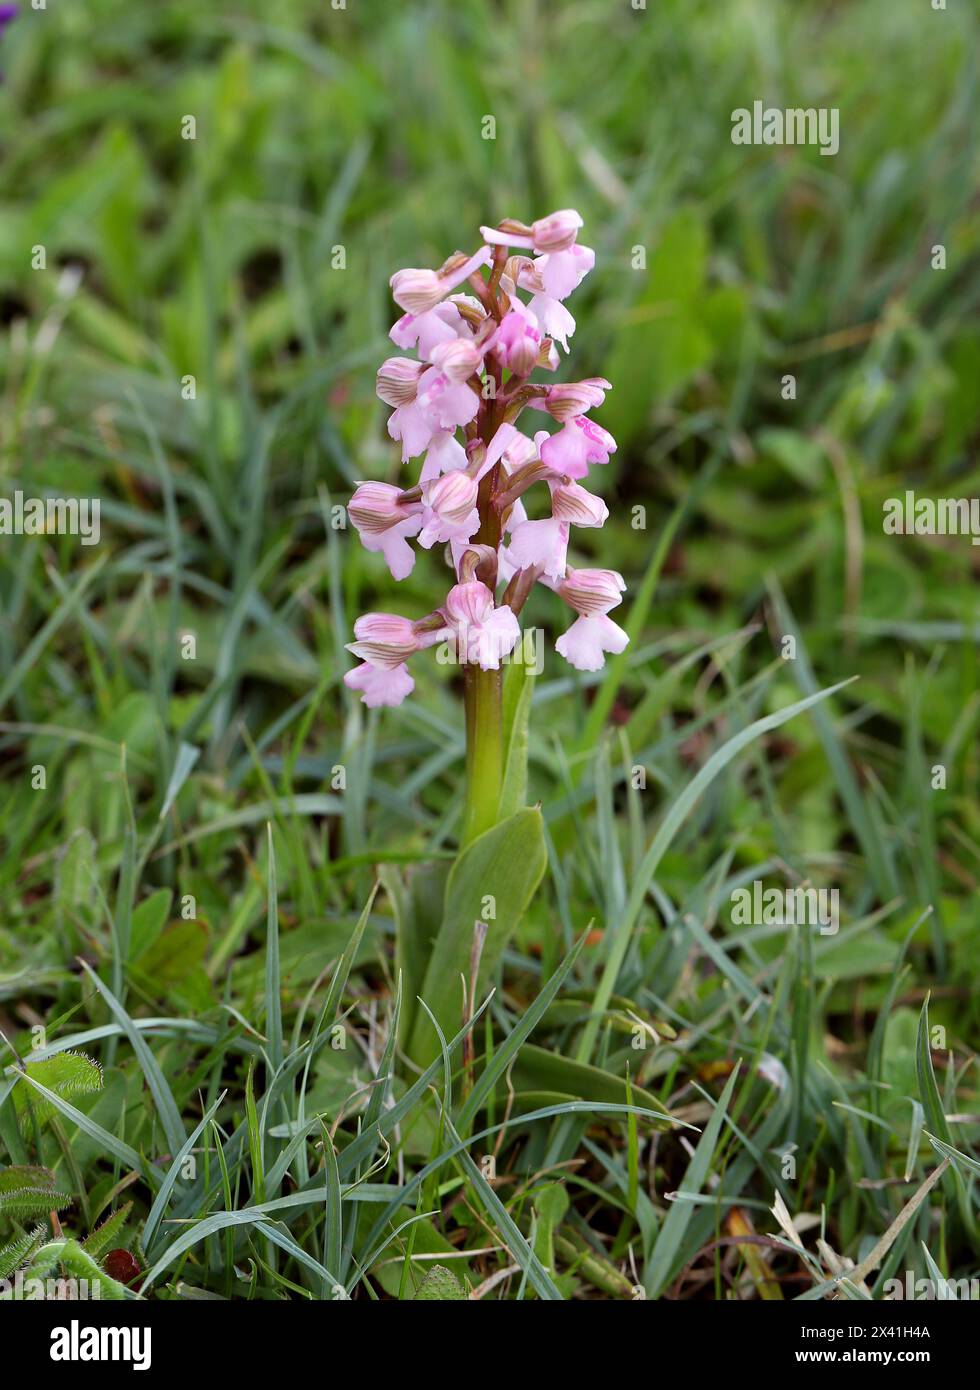 Orchidée à ailes vertes ou orchidée à veines vertes, Anacamptis morio (Orchis morio), Orchidaceae. Bernwood Meadows, Oxfordshire, Royaume-Uni. Variation rose. Banque D'Images